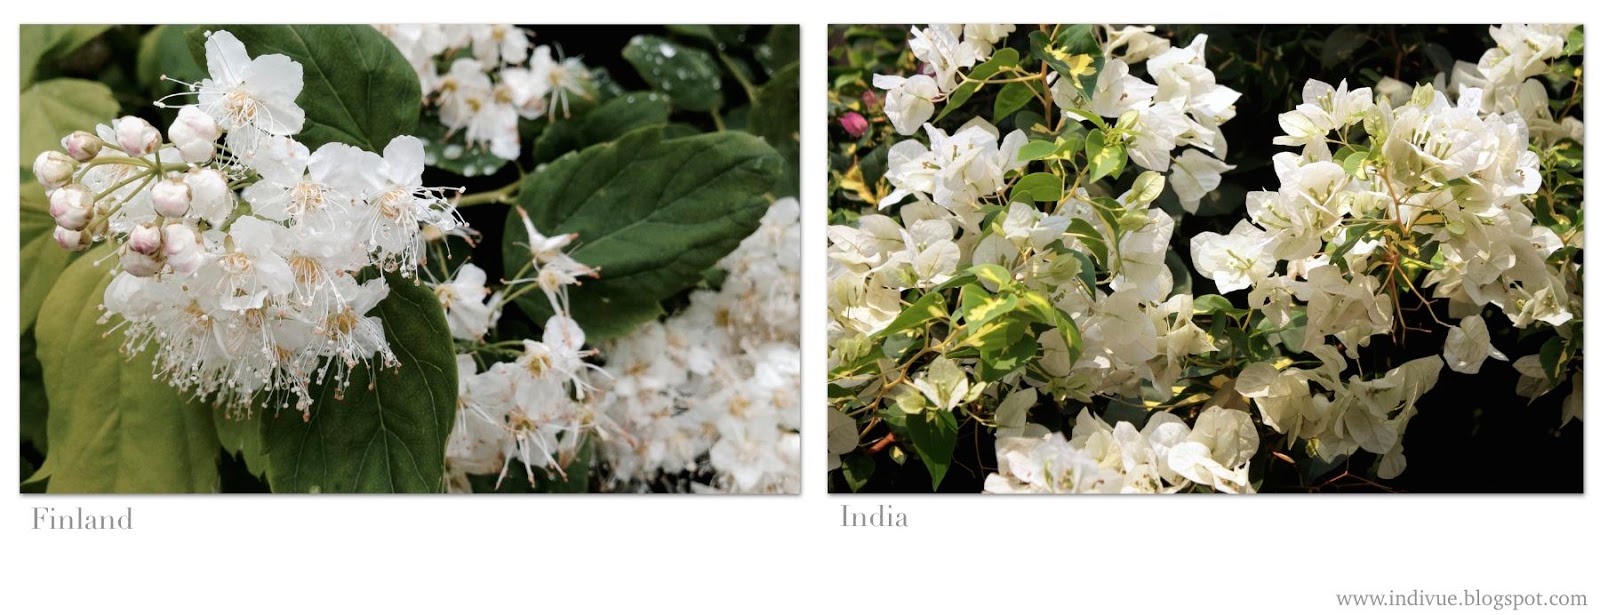 Valkoisia suomalaisia ja intialaisia kukkia